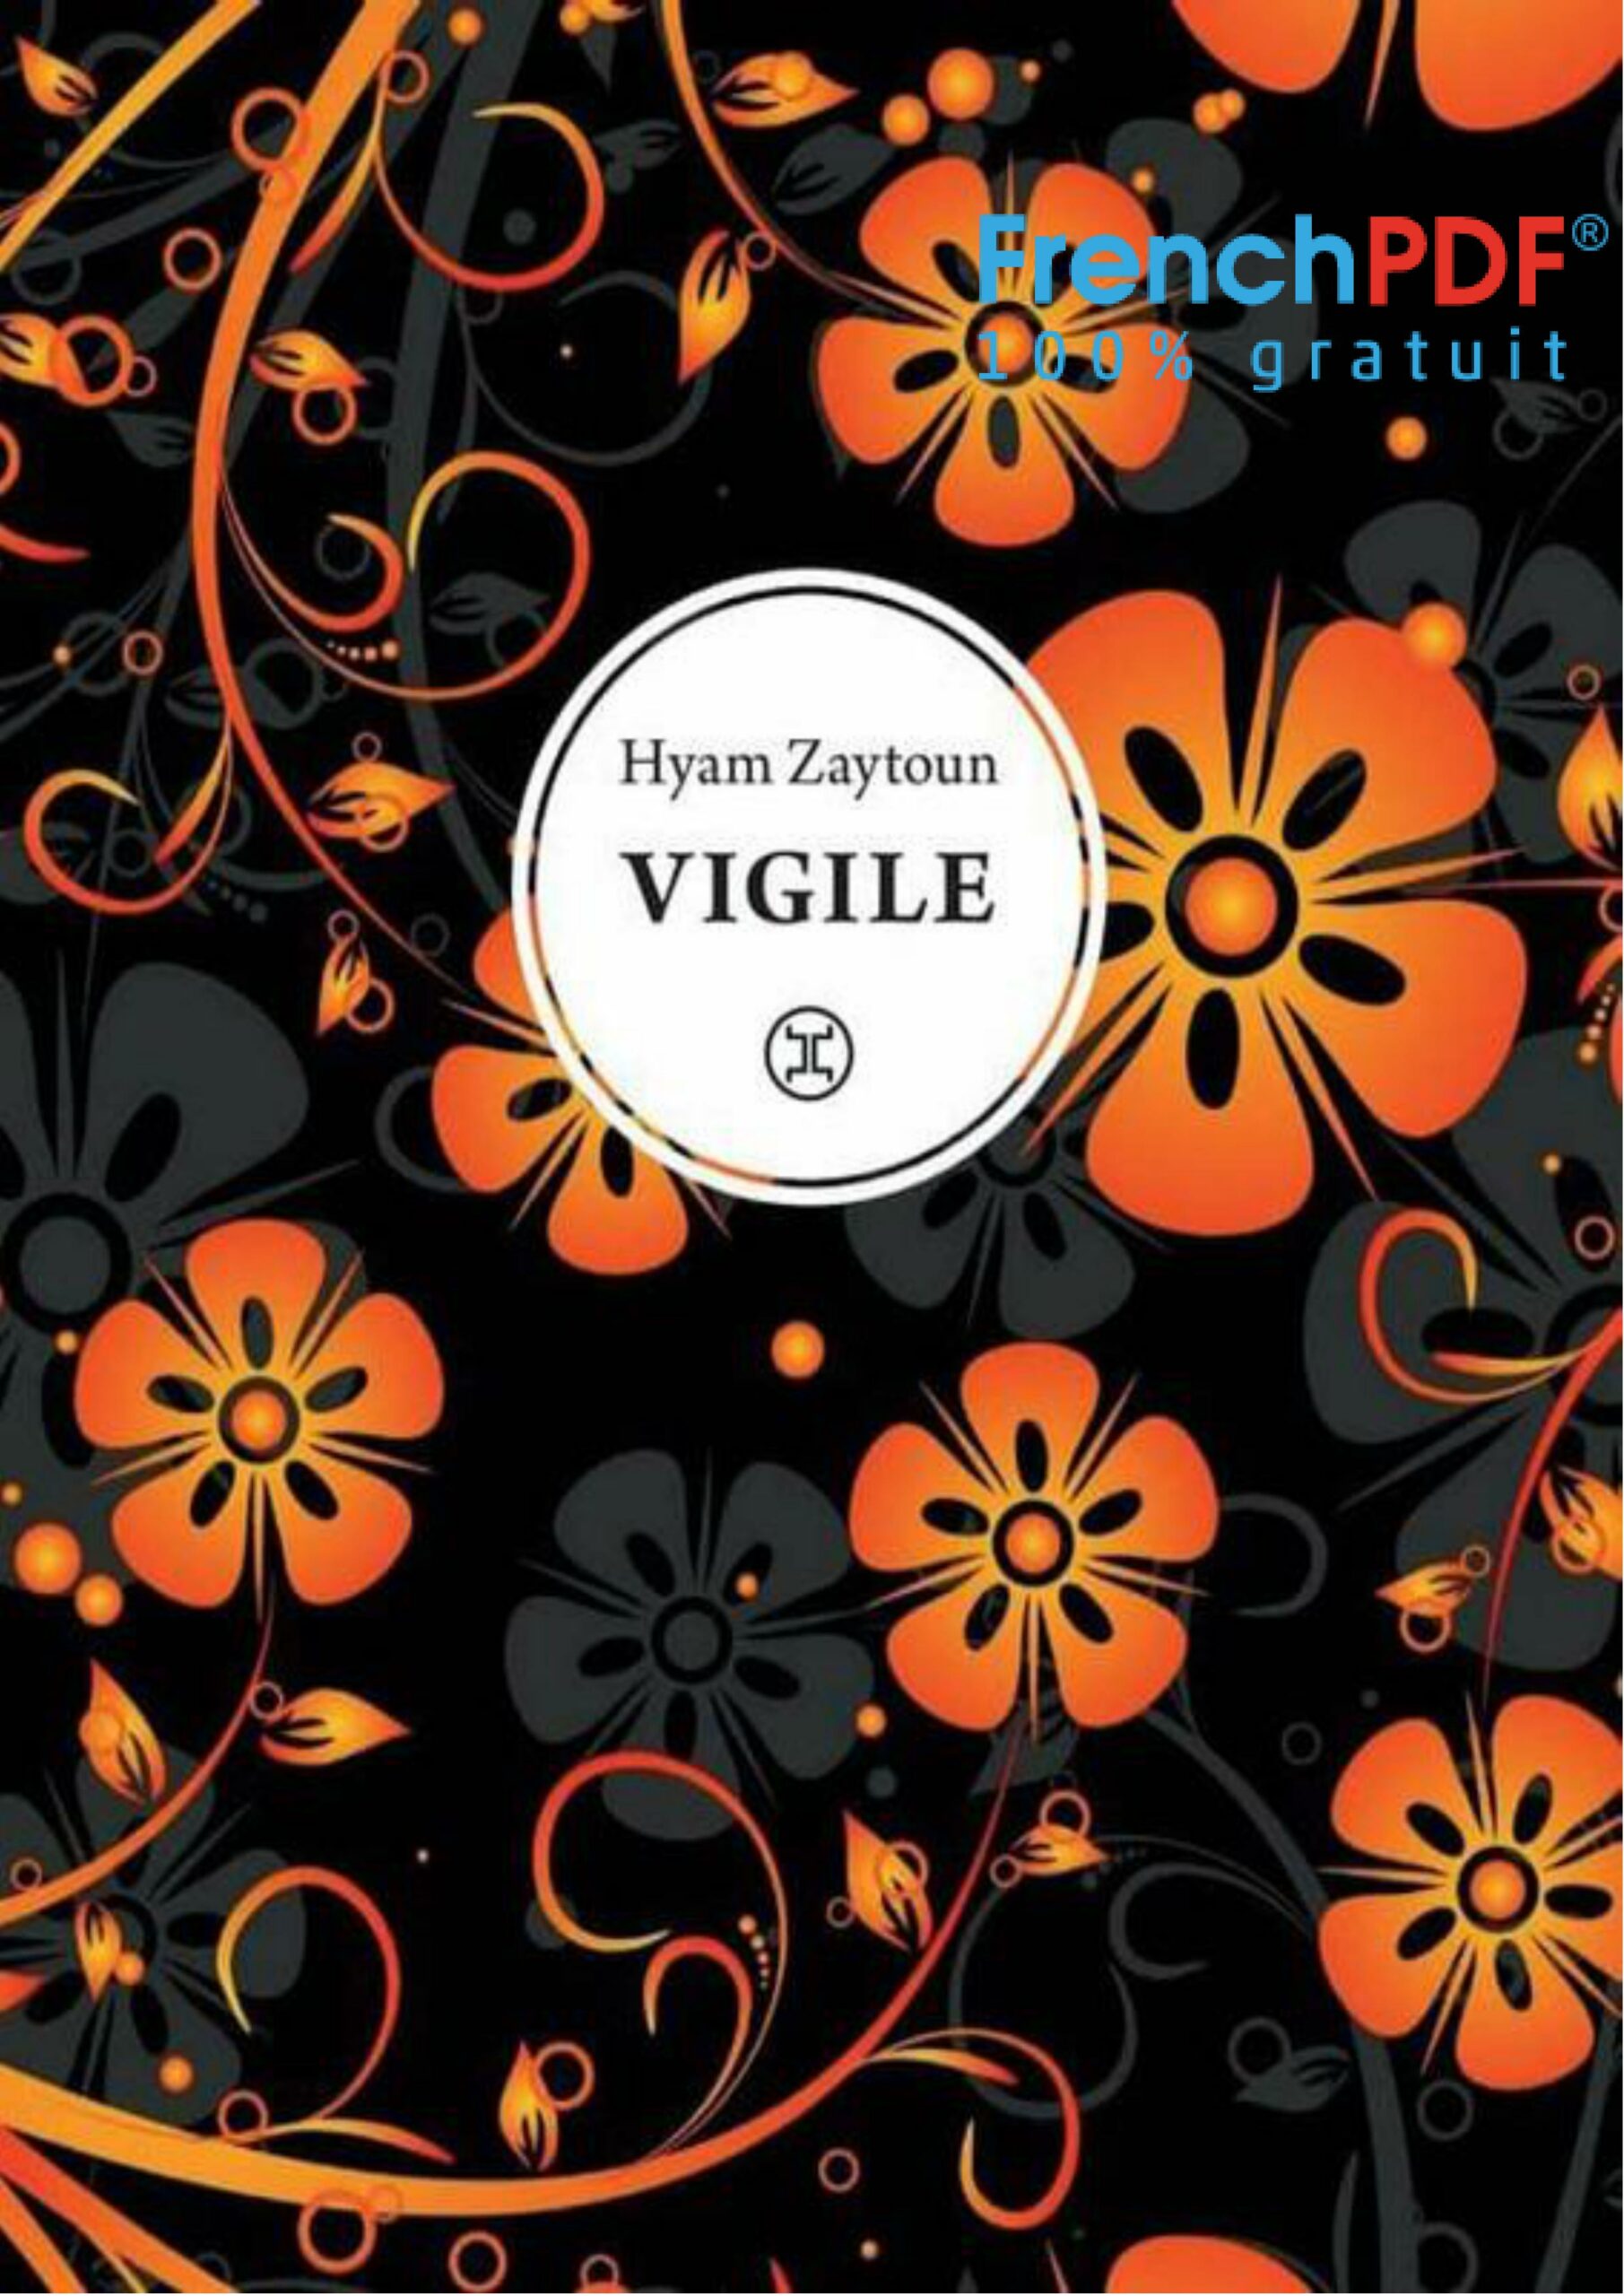 Vigile - Hyam Zaytoun - FrenchPDF.com